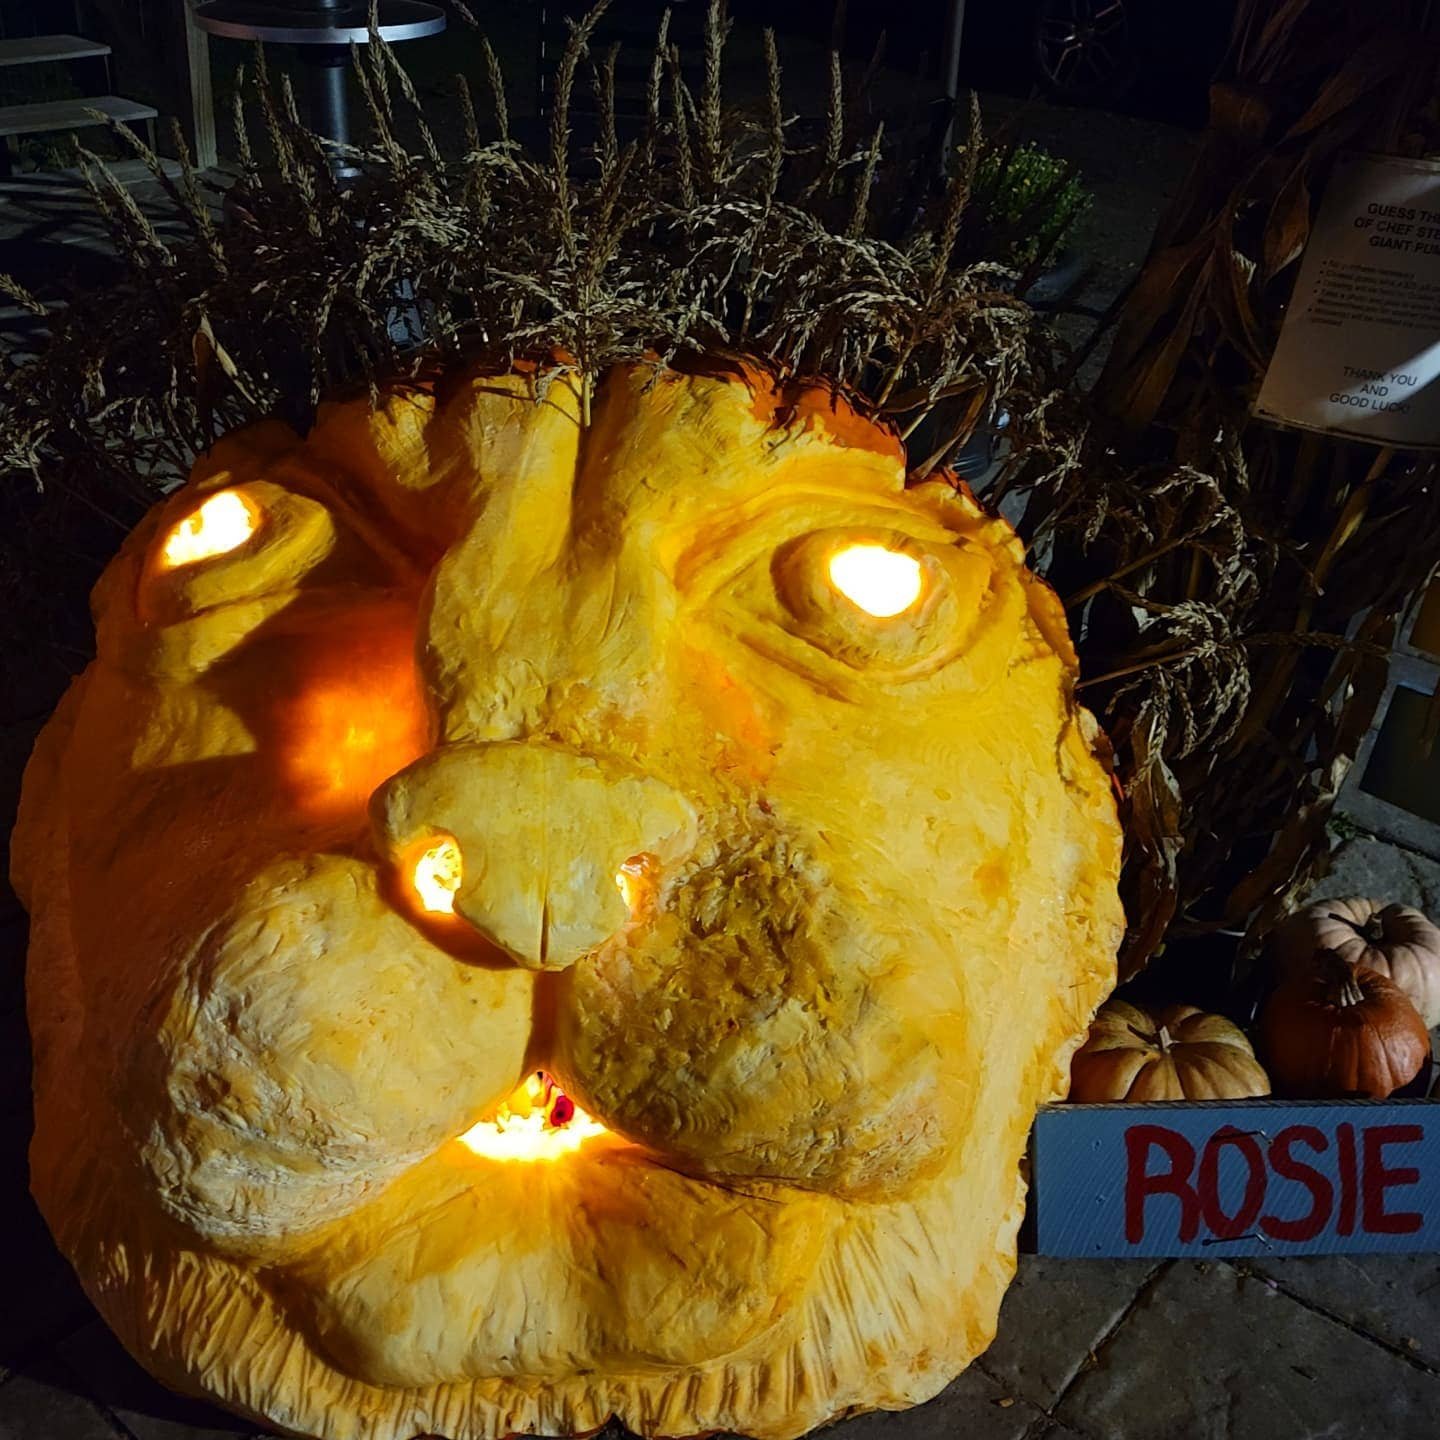  “Rosie” the pumpkin lion was no lightweight. Photo courtesy Stowe Street Café 